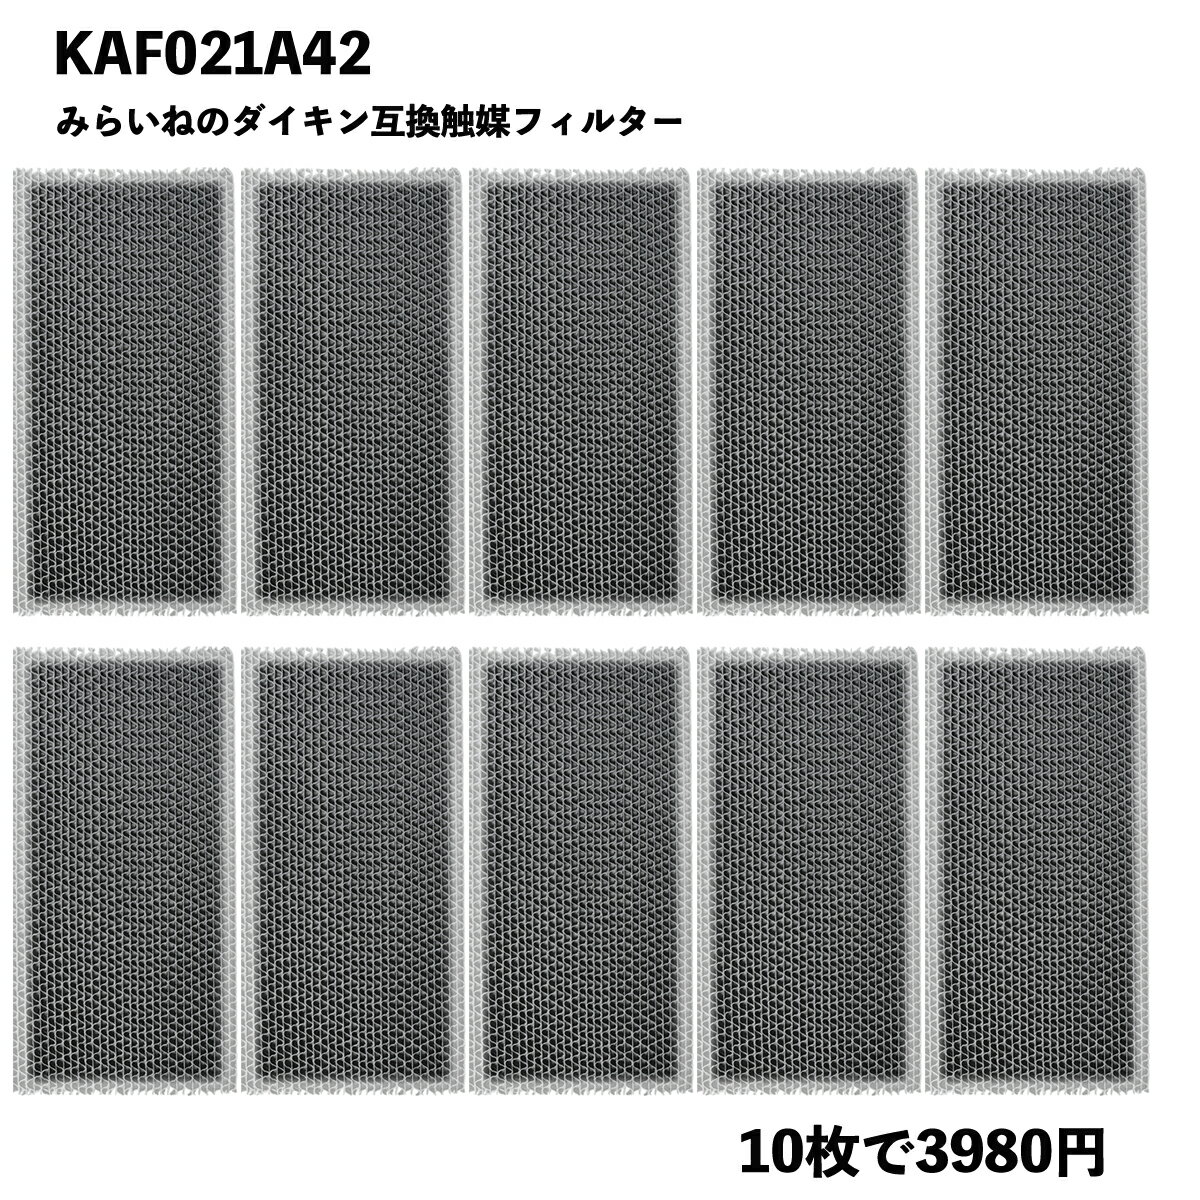 【10枚】ダイキン 空気清浄機 フィルター KAF021A42 エアコン 集塵 脱臭フィルター 99A0484 PM2.5 花粉